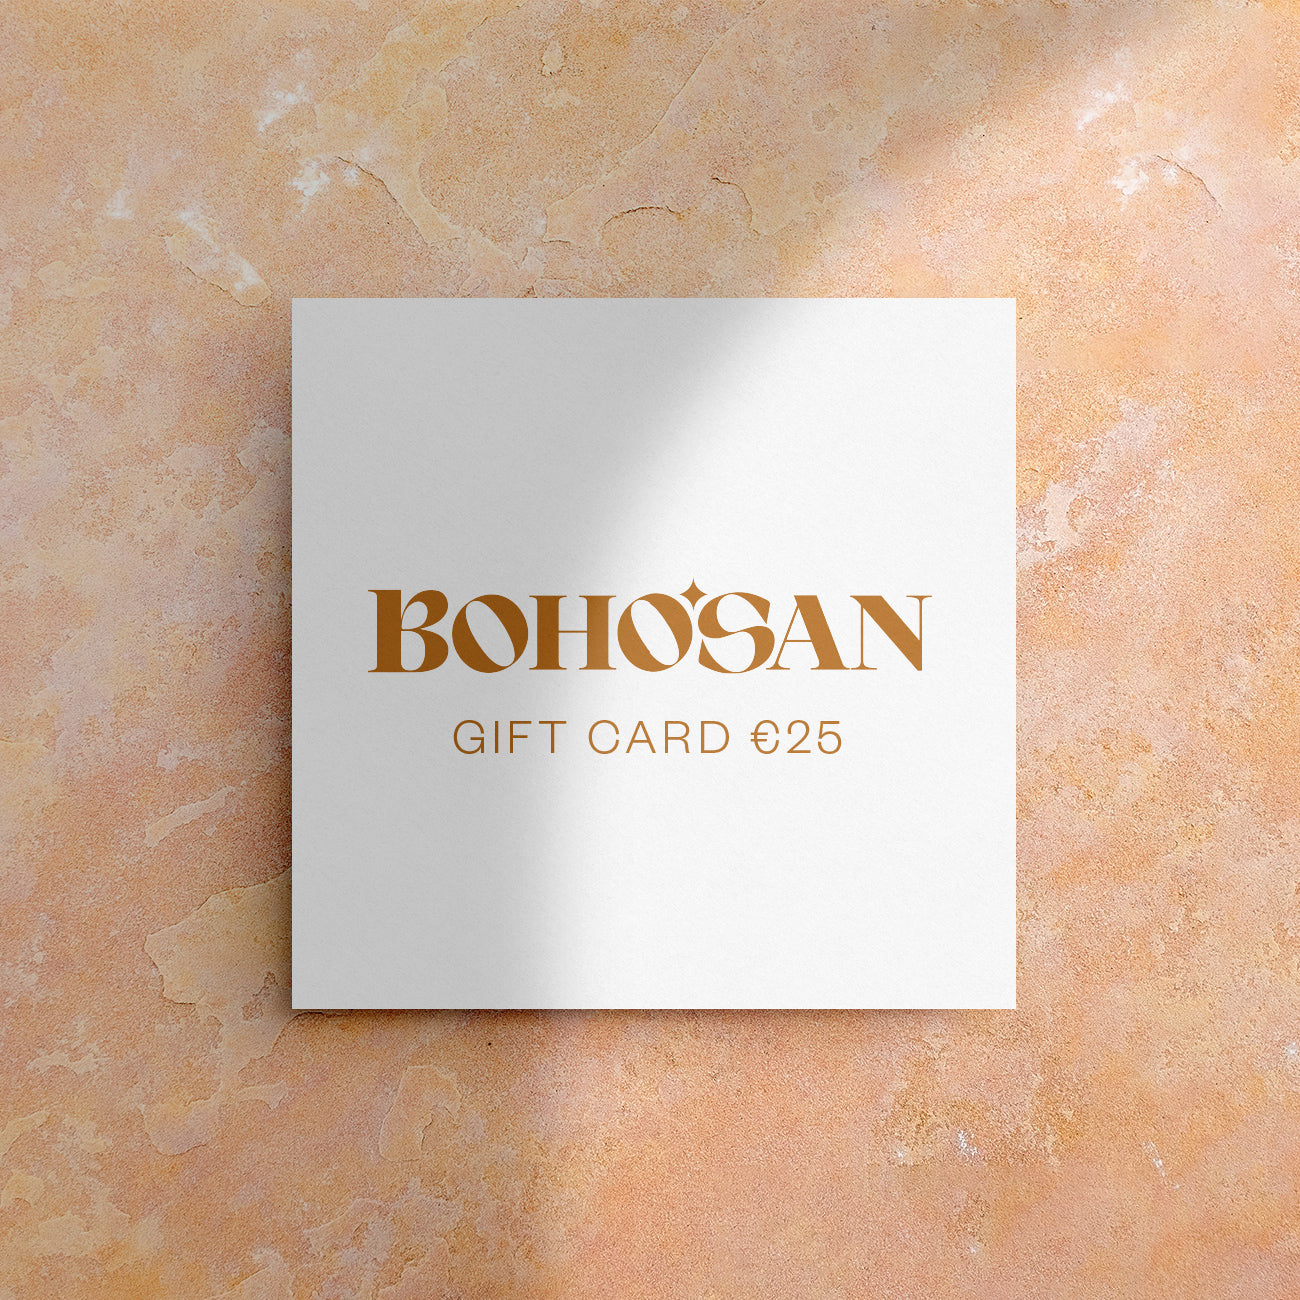 Bohosan gift card - €25 Cadeaubonnen BOHOSAN 